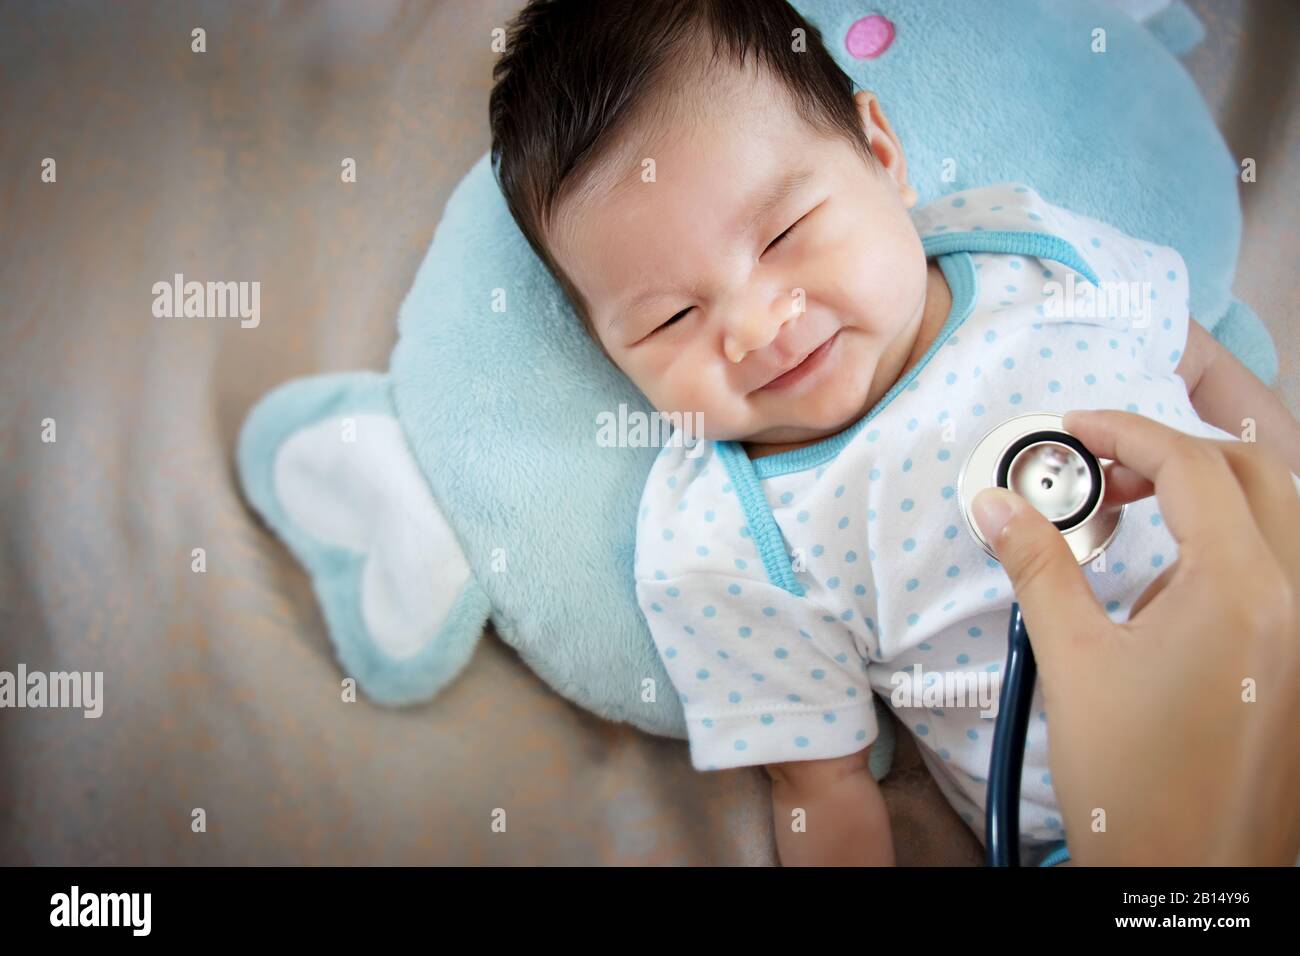 concept de personnes saines. Bébé asiatique adorable rire avec le visage heureux pour une bonne santé sur le médecin vérifier le temps Banque D'Images